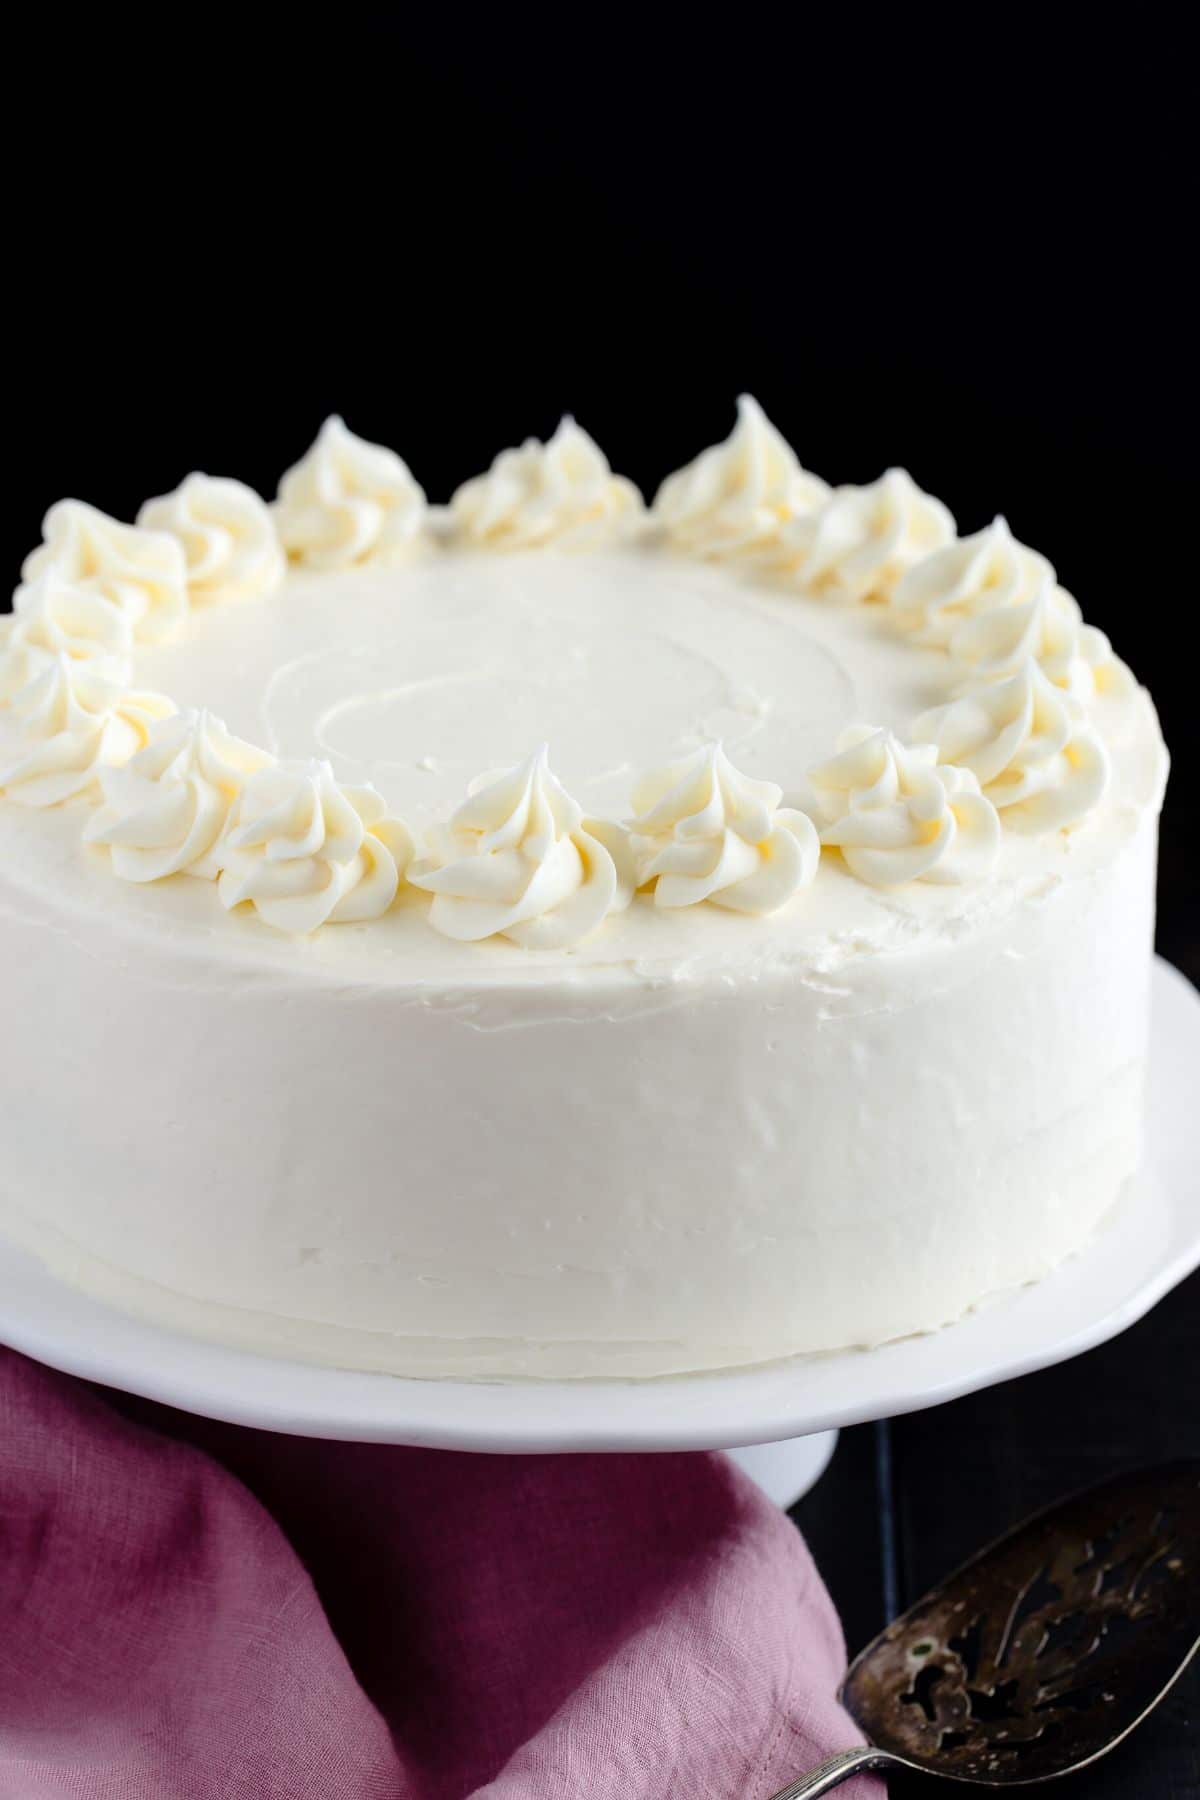 Los pasteles de vainilla caseros se colocan en un soporte de pastel blanco.